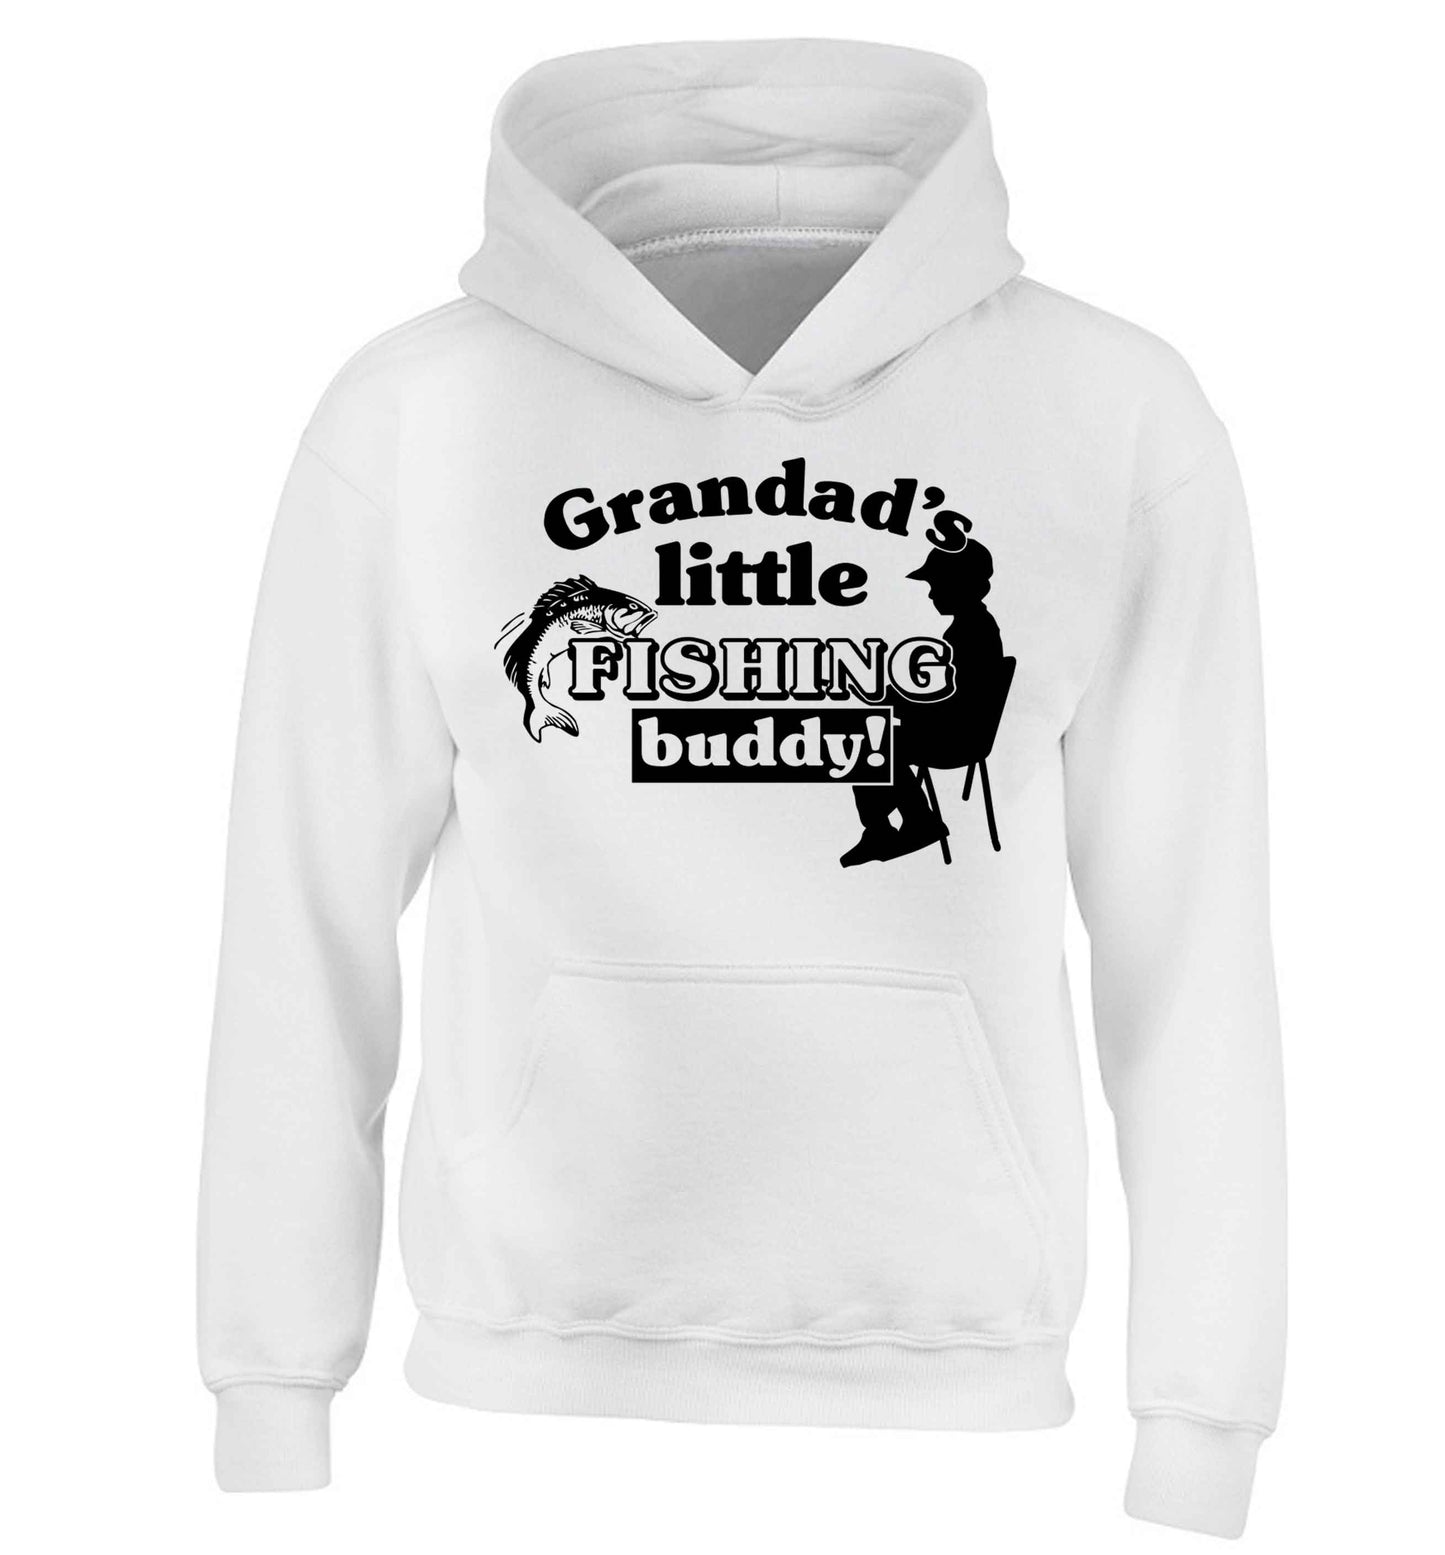 Grandad's little fishing buddy! children's white hoodie 12-13 Years